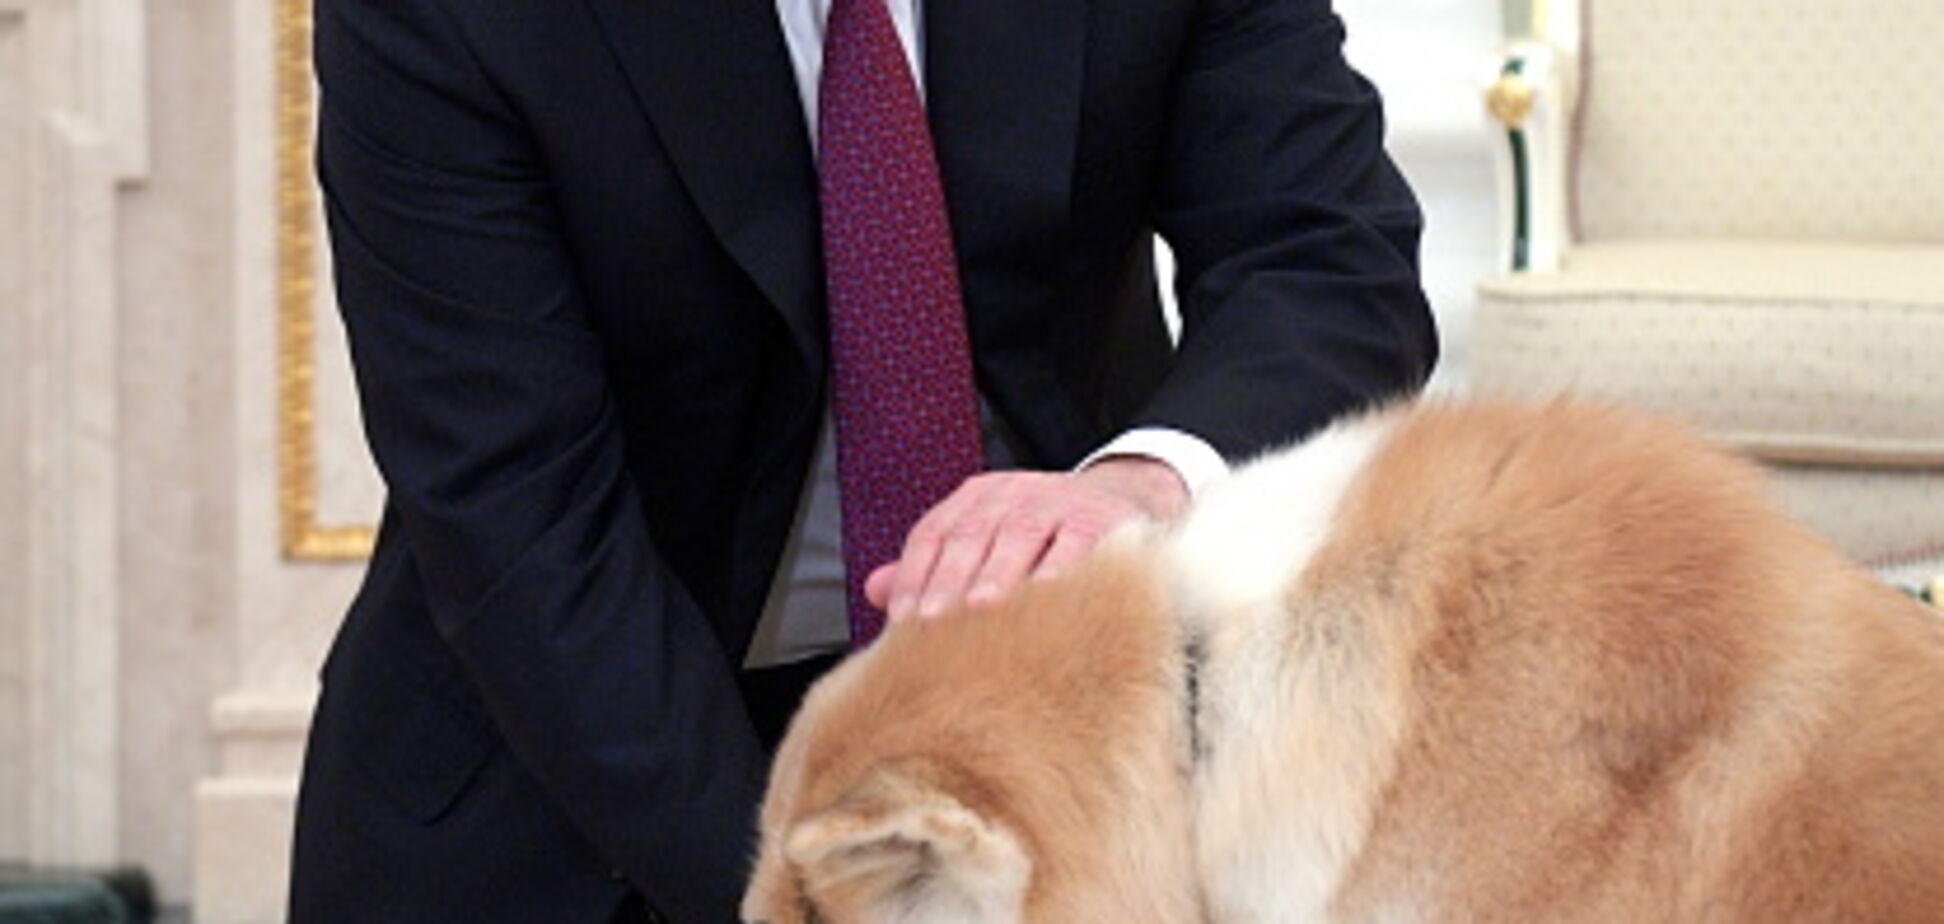 Німецький журнал Focus назвав Путіна собакою: Росія відреагувала